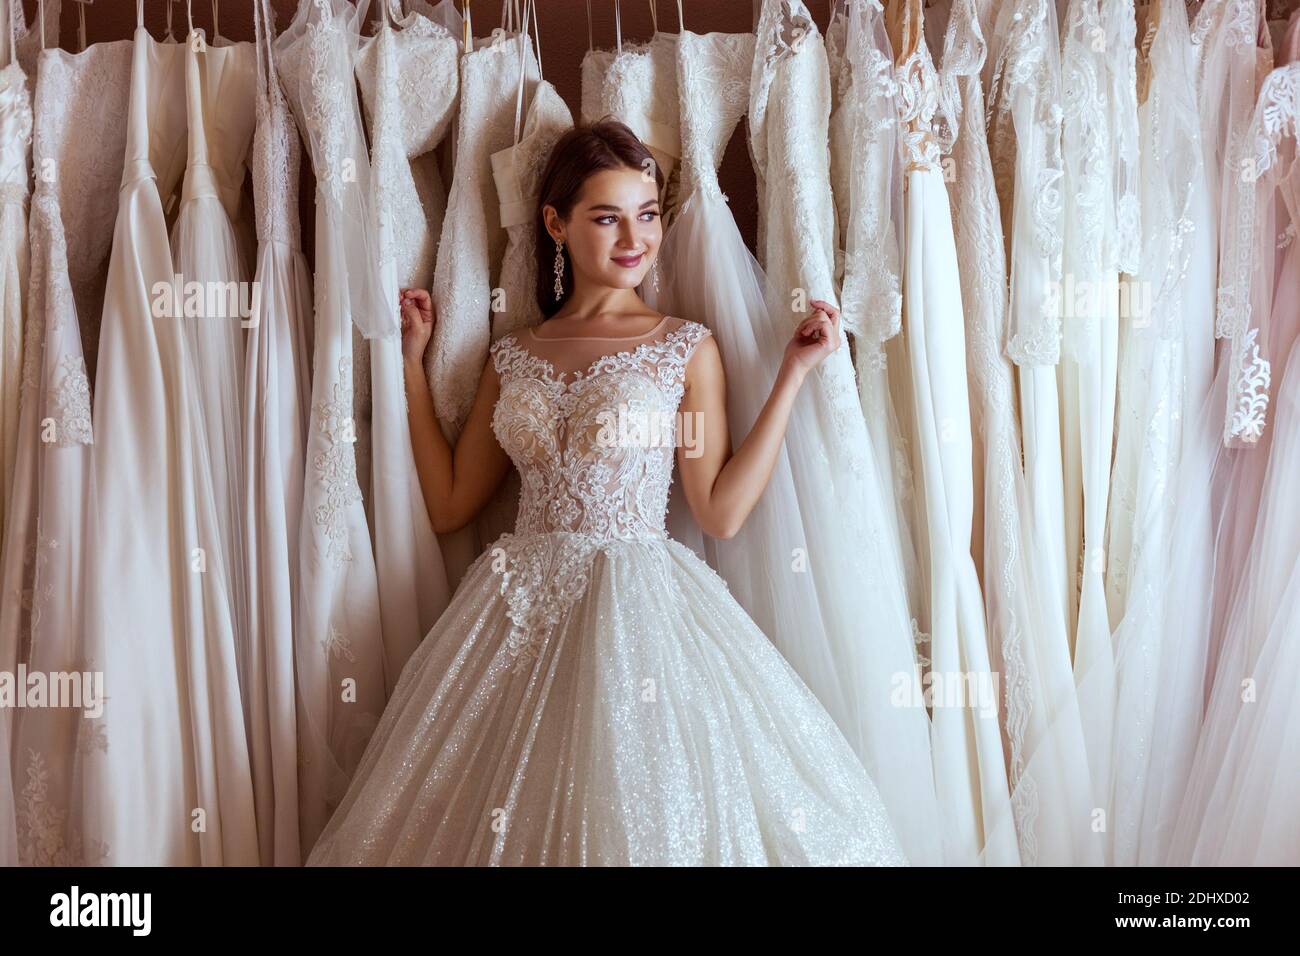 Junge schöne Frau in einem Hochzeitskleid unter den Satz von teuren Brautkleider. Stockfoto